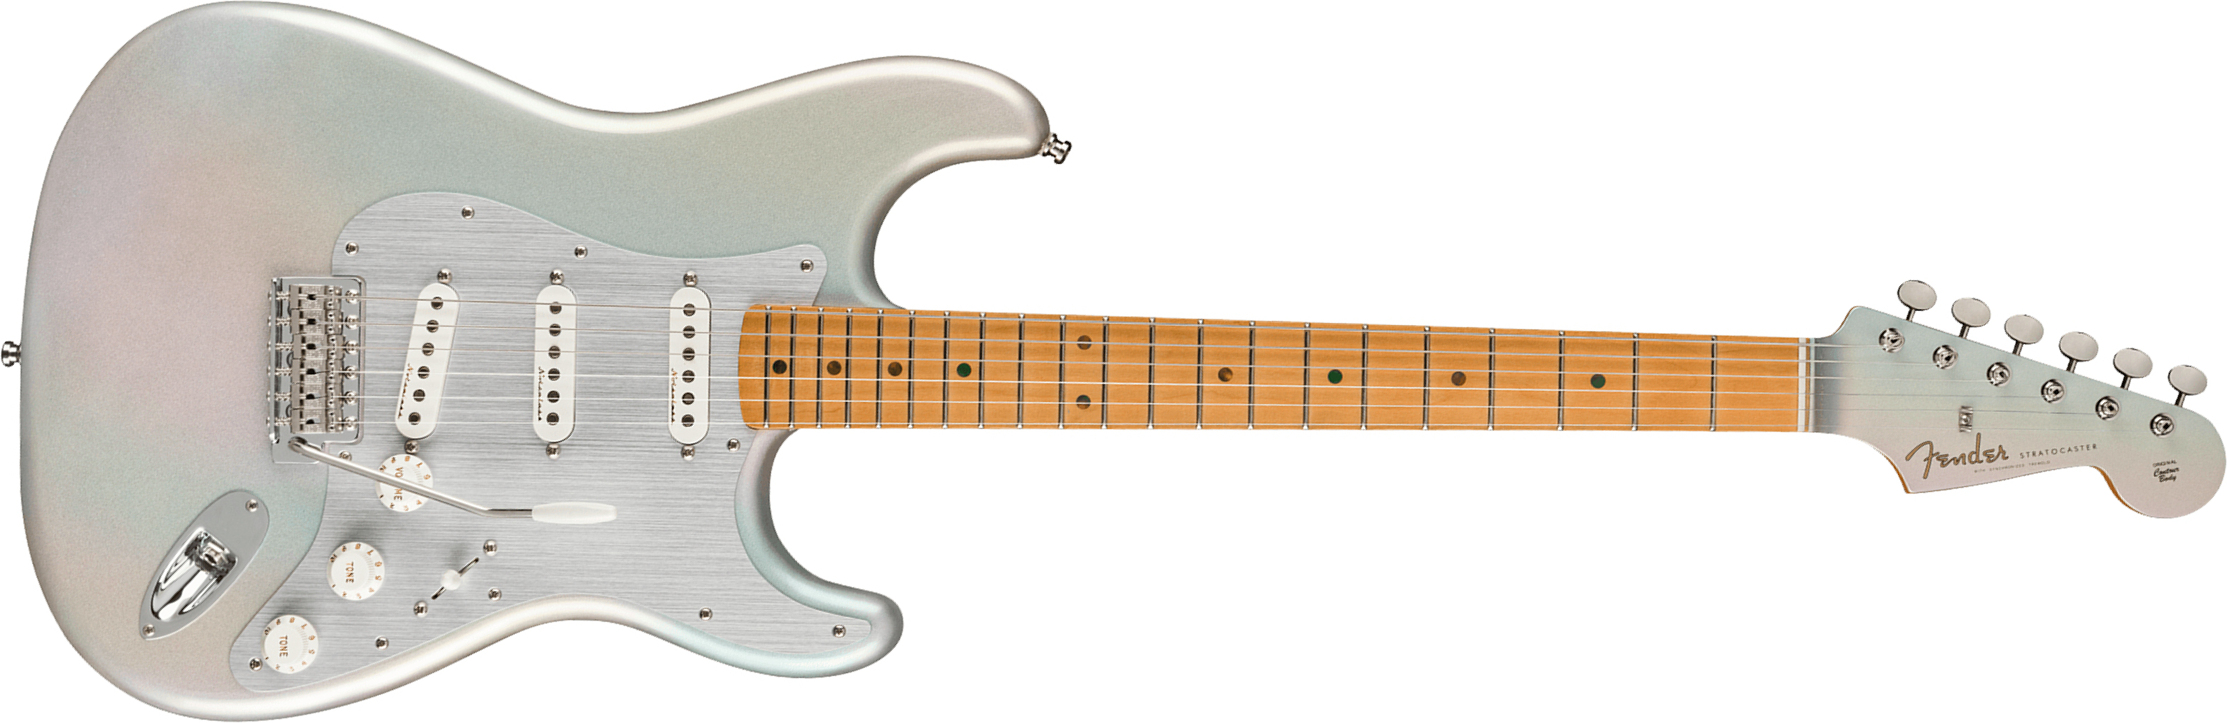 Fender H.e.r. Strat Signature Mex 3s Trem Mn - Chrome Glow - Elektrische gitaar in Str-vorm - Main picture